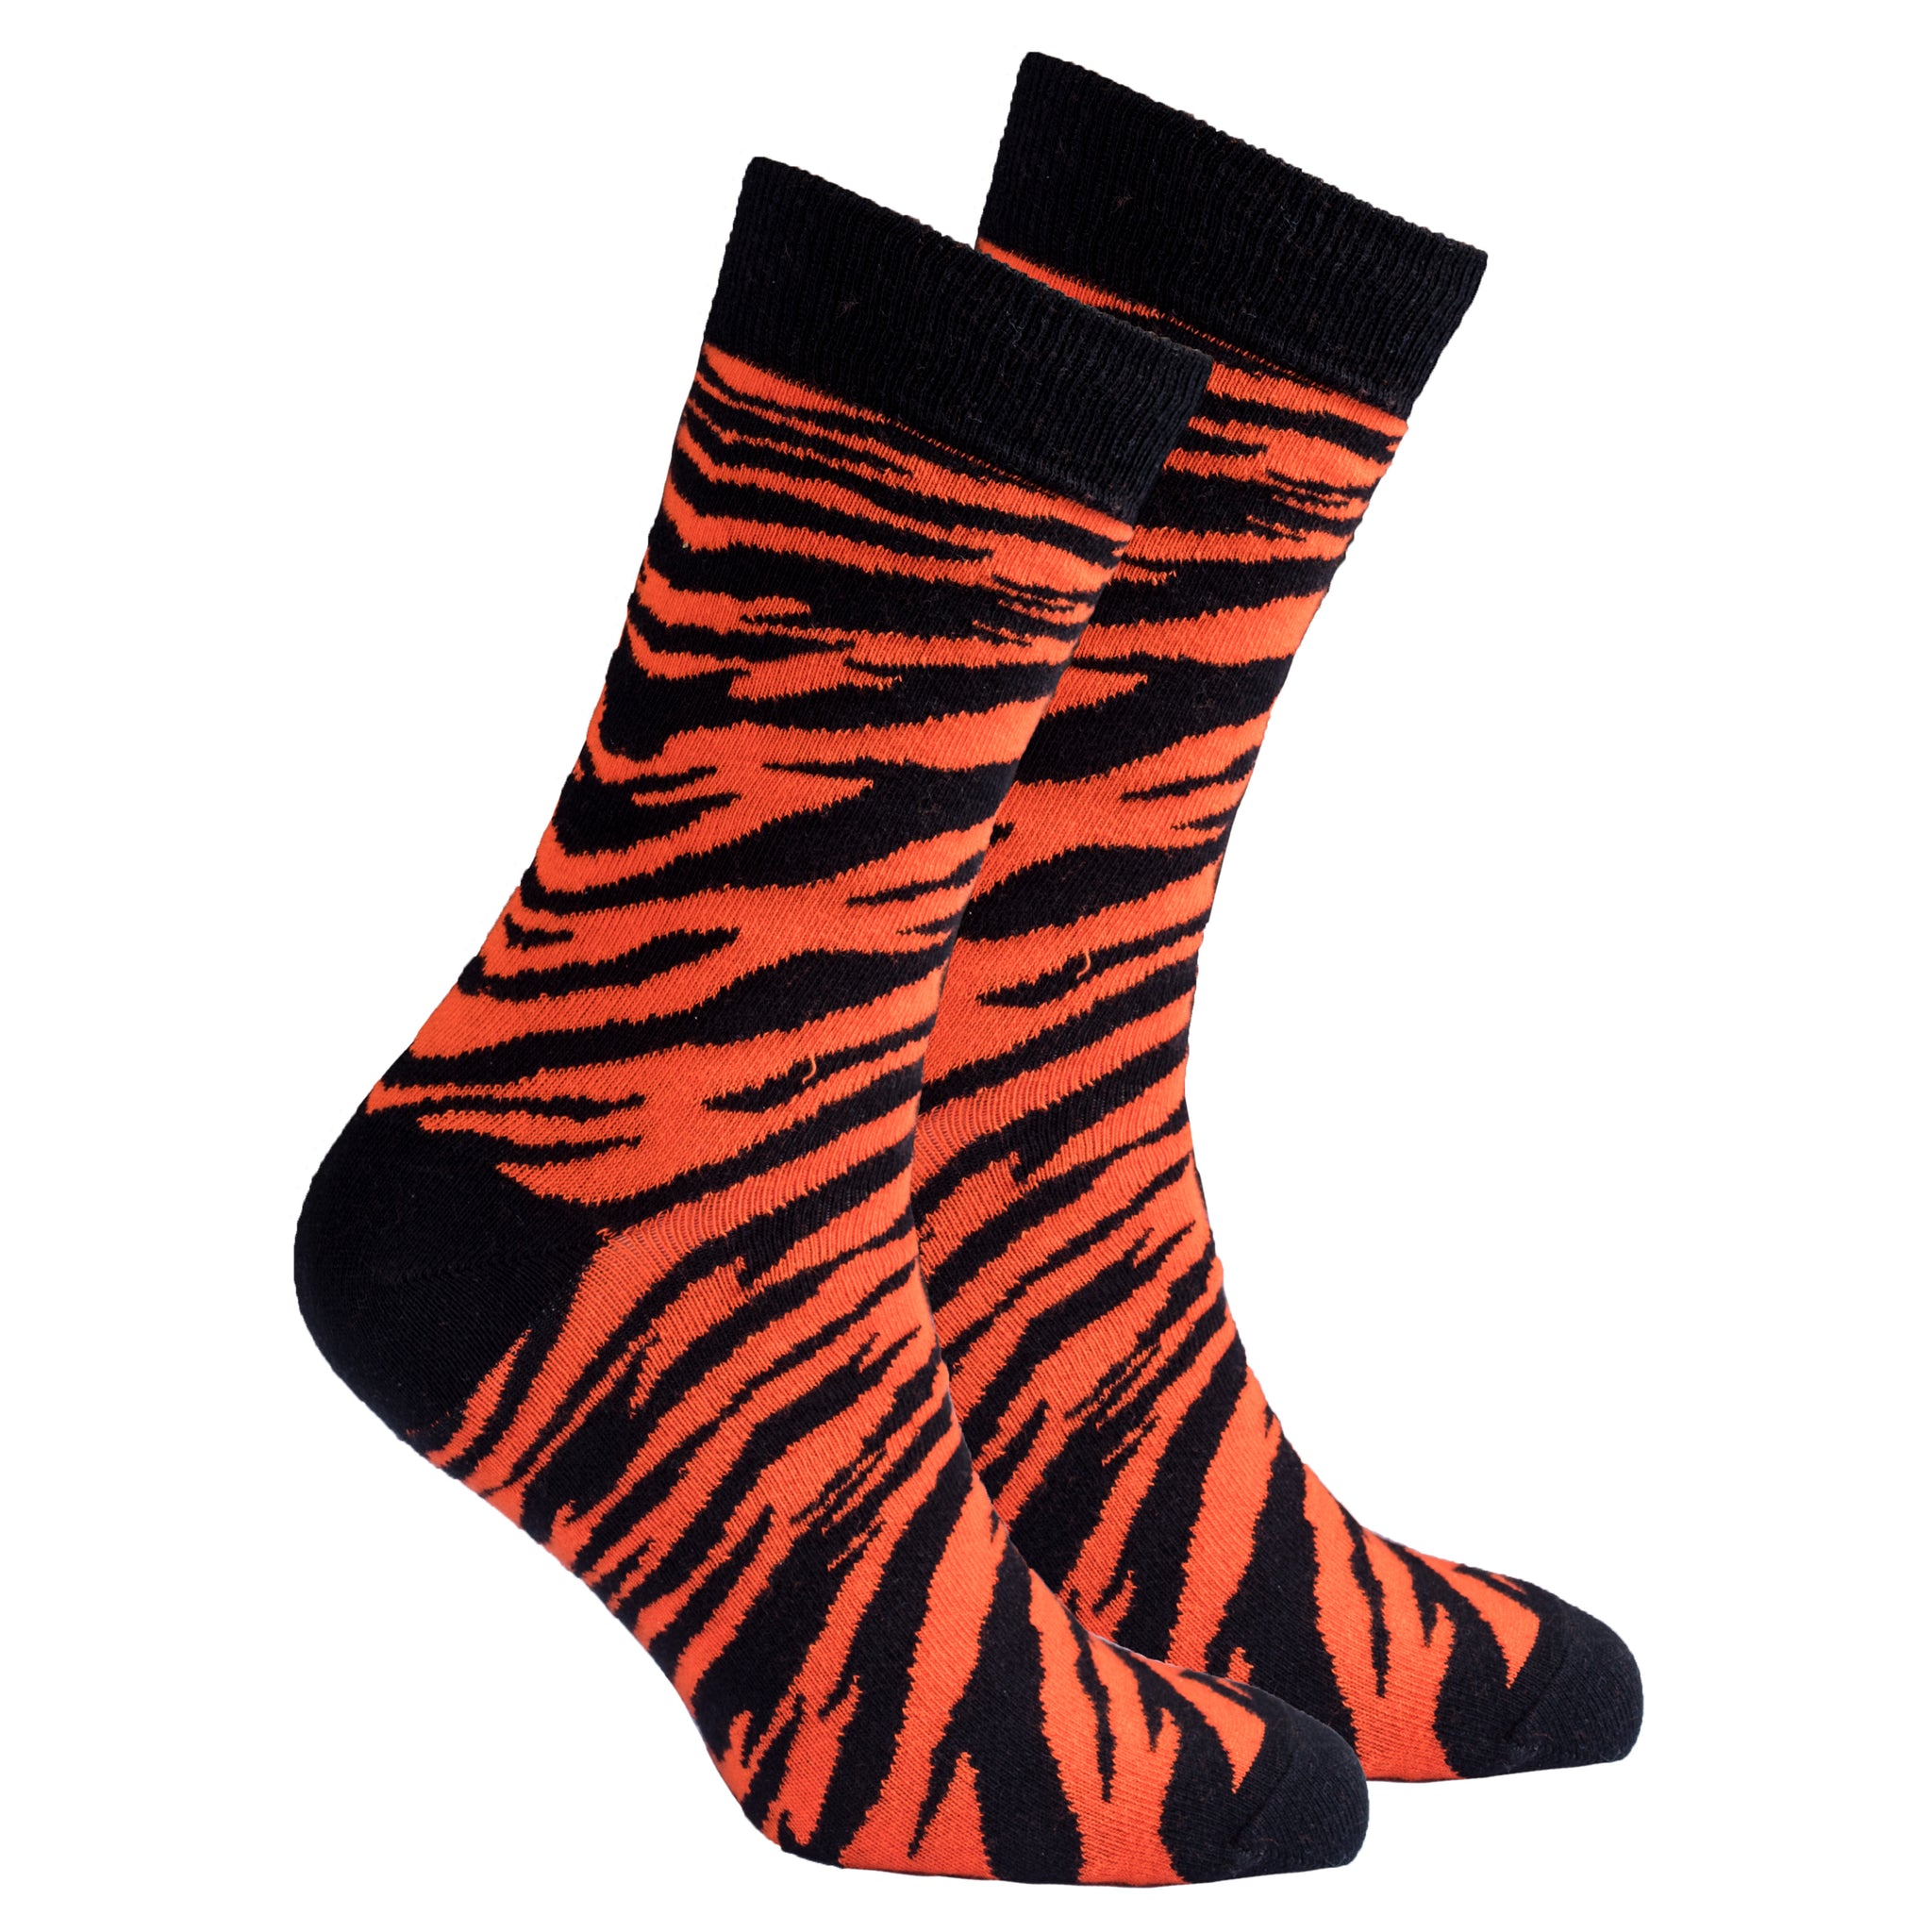 Men's Tiger Socks - Socks n Socks